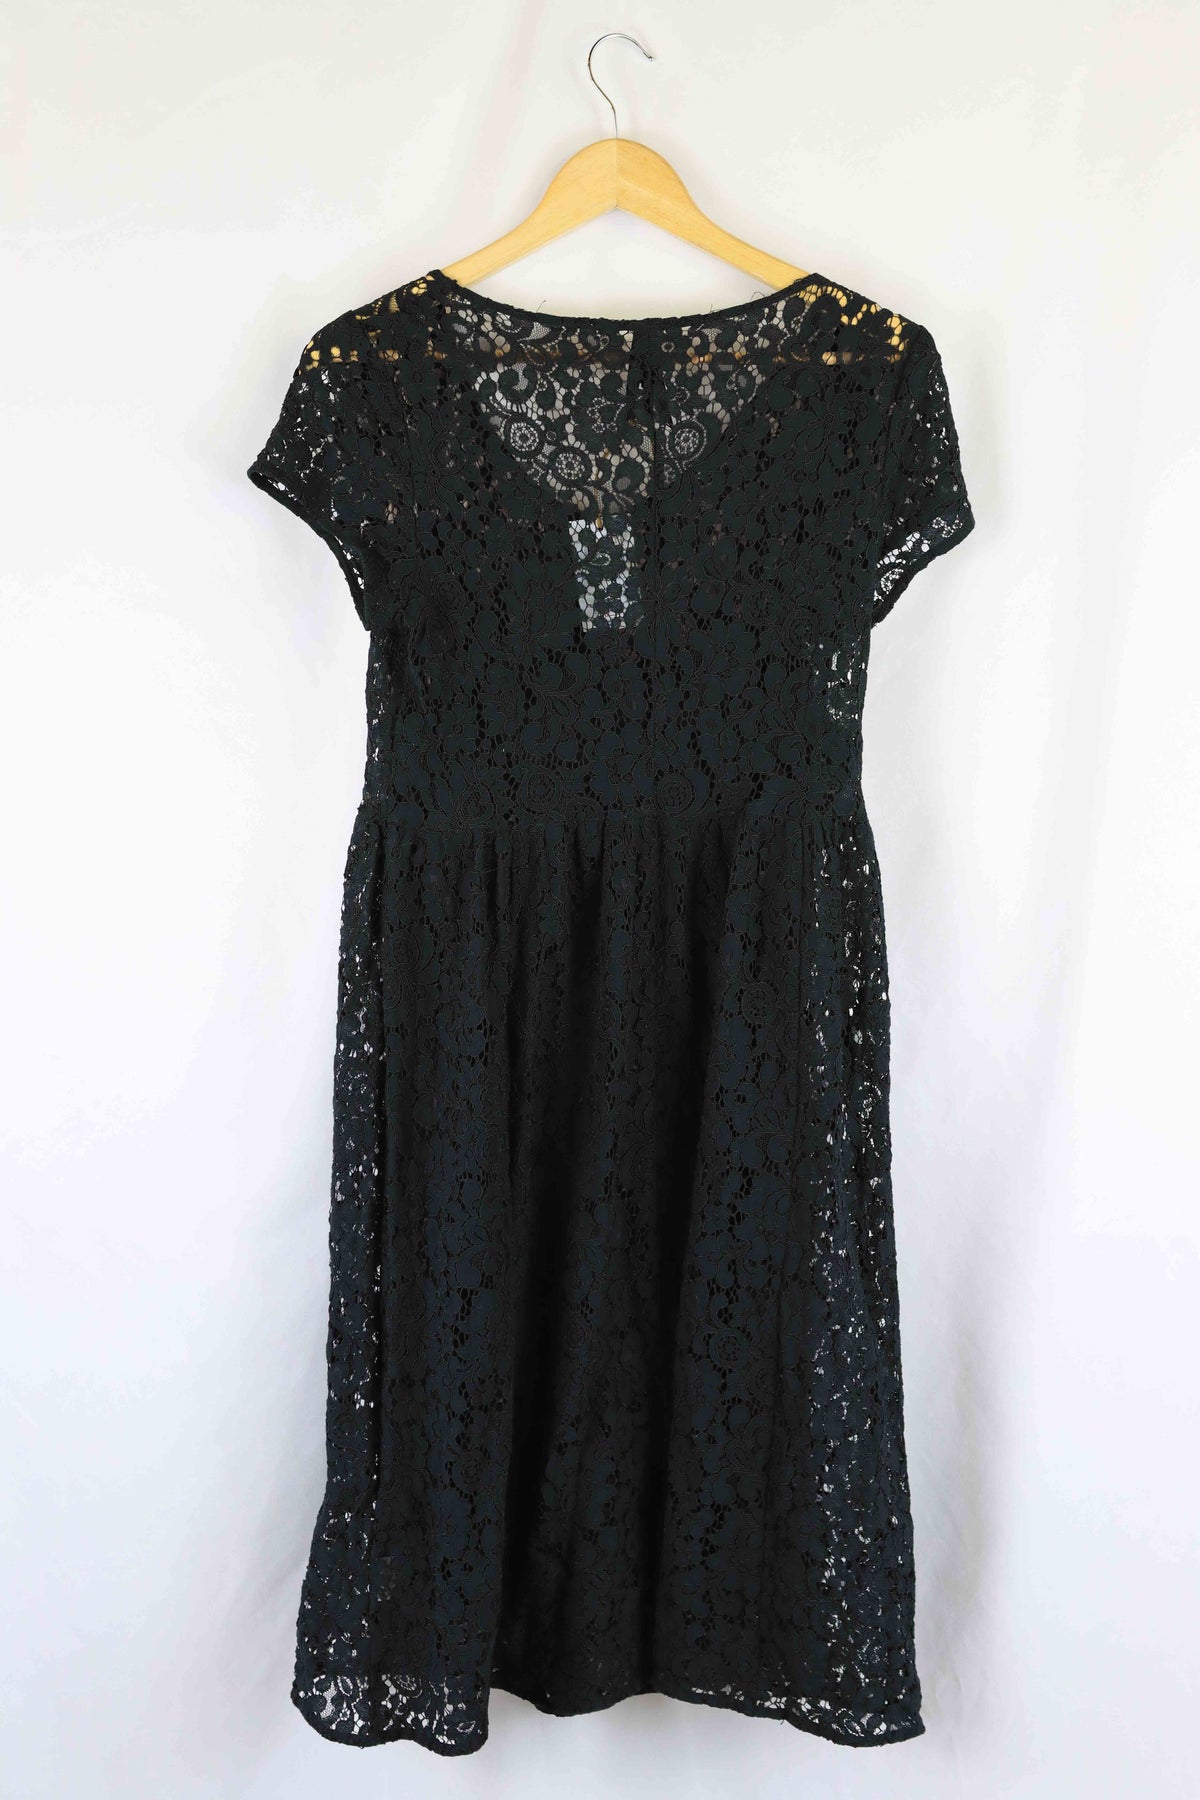 Dangerfield Black Lace Dress 12